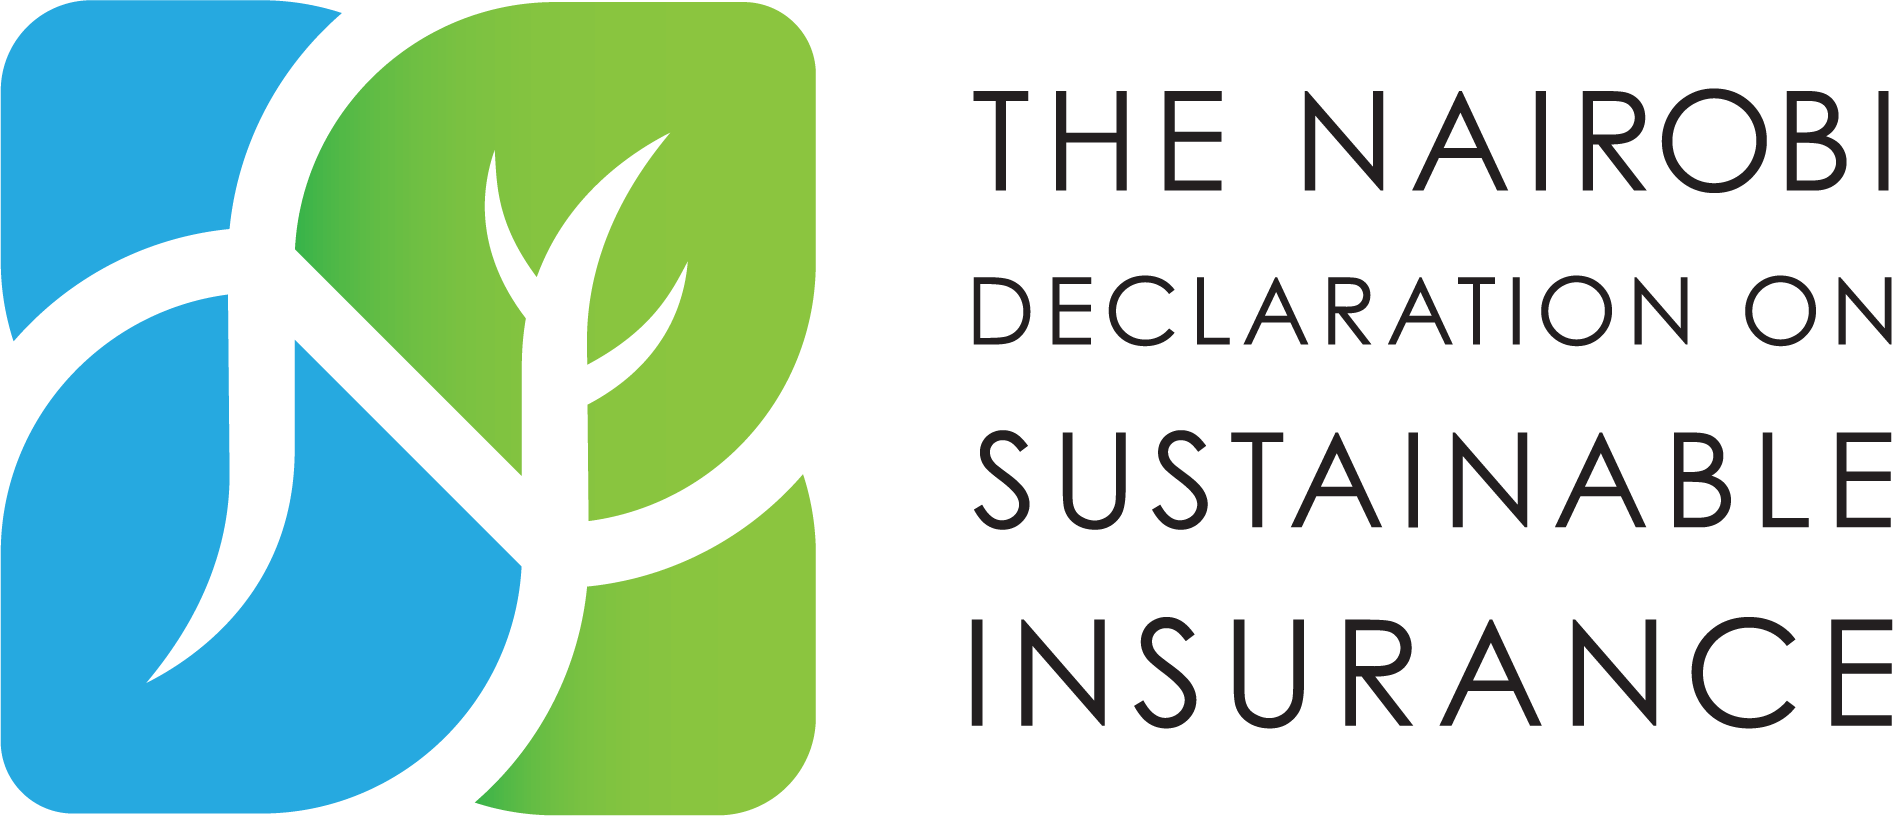 The Nairobi Declaration on sustainable insurance - EARe partnership in sustainability